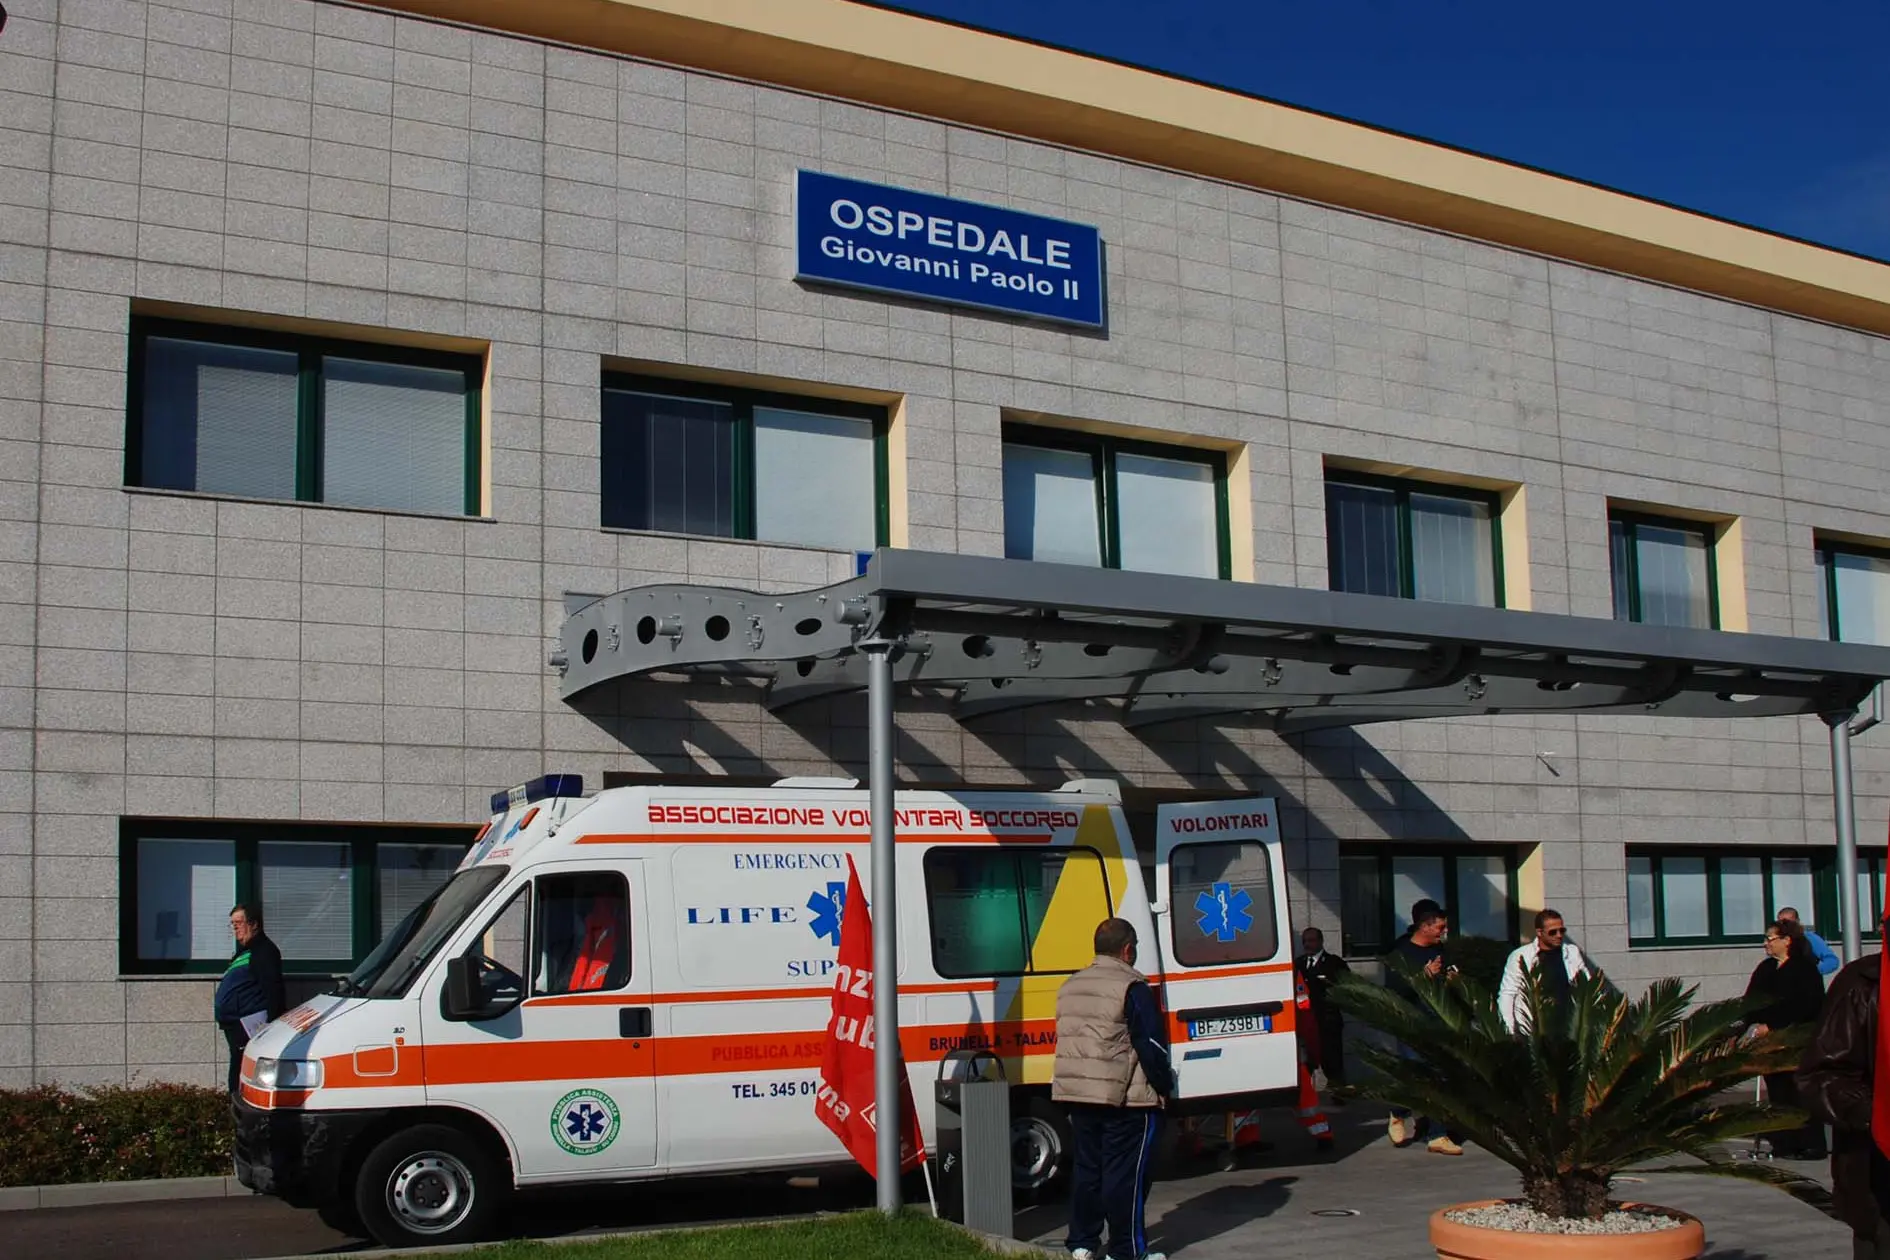 Il pronto soccorso dell'Ospedale Giovanni Paolo II. (Archivio L'Unione Sarda - Satta)